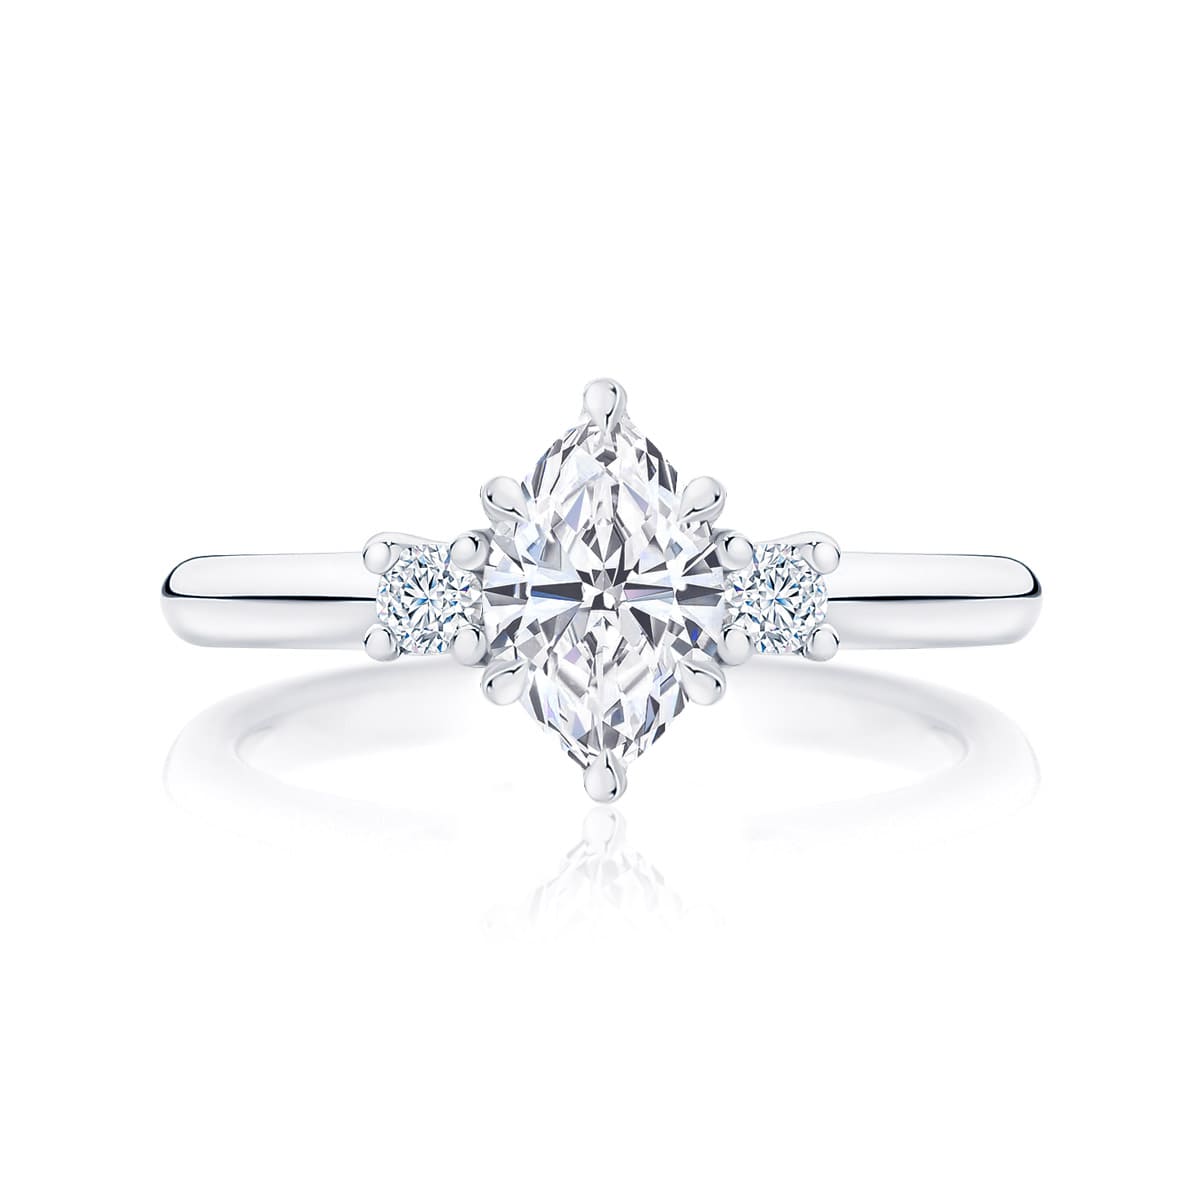 Marquise Diamond Three Stone Ring in Platinum | Arcadia (Marquise)